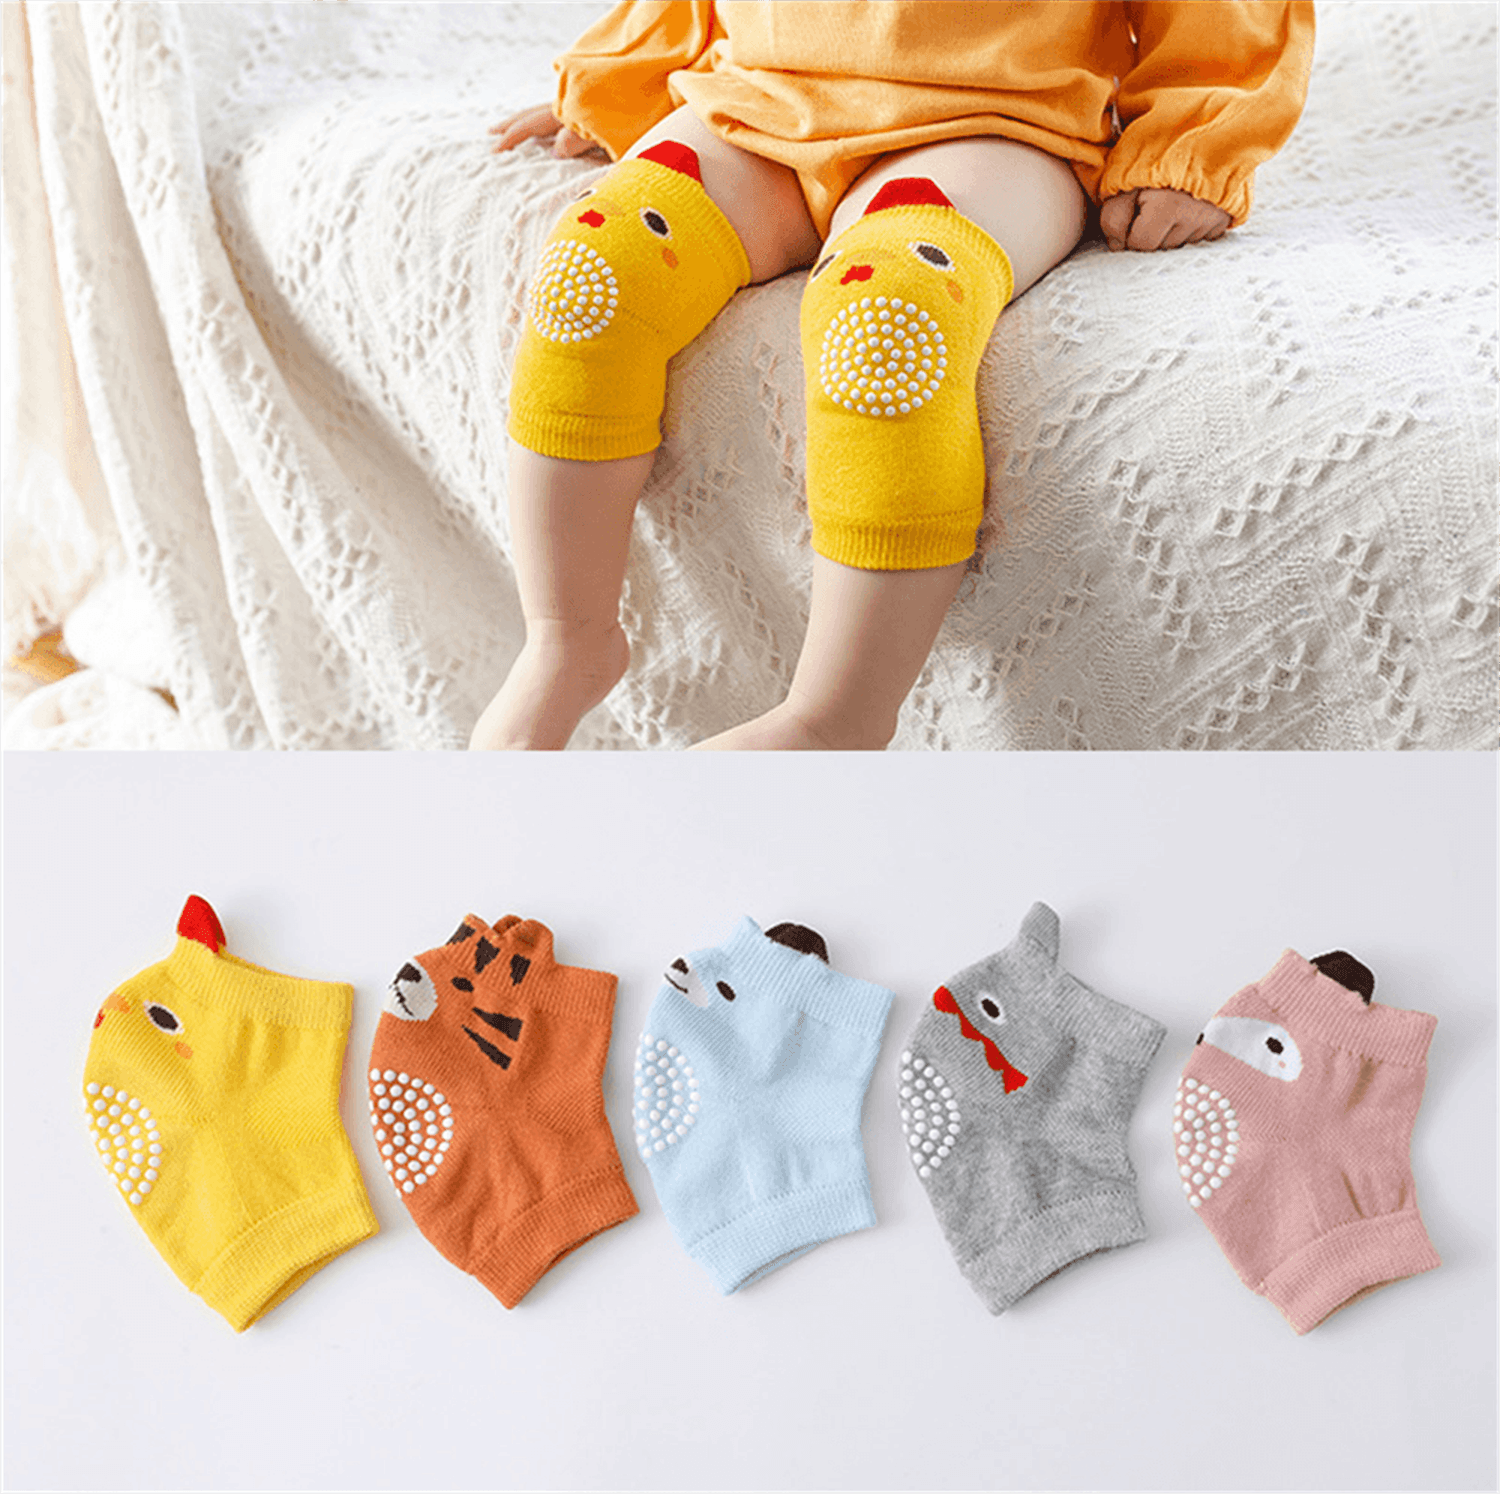 Genouillères antidérapantes pour bébé, 1 paire, coussin de sécurité pour  nourrissons, chauffe-jambes, protection du genou